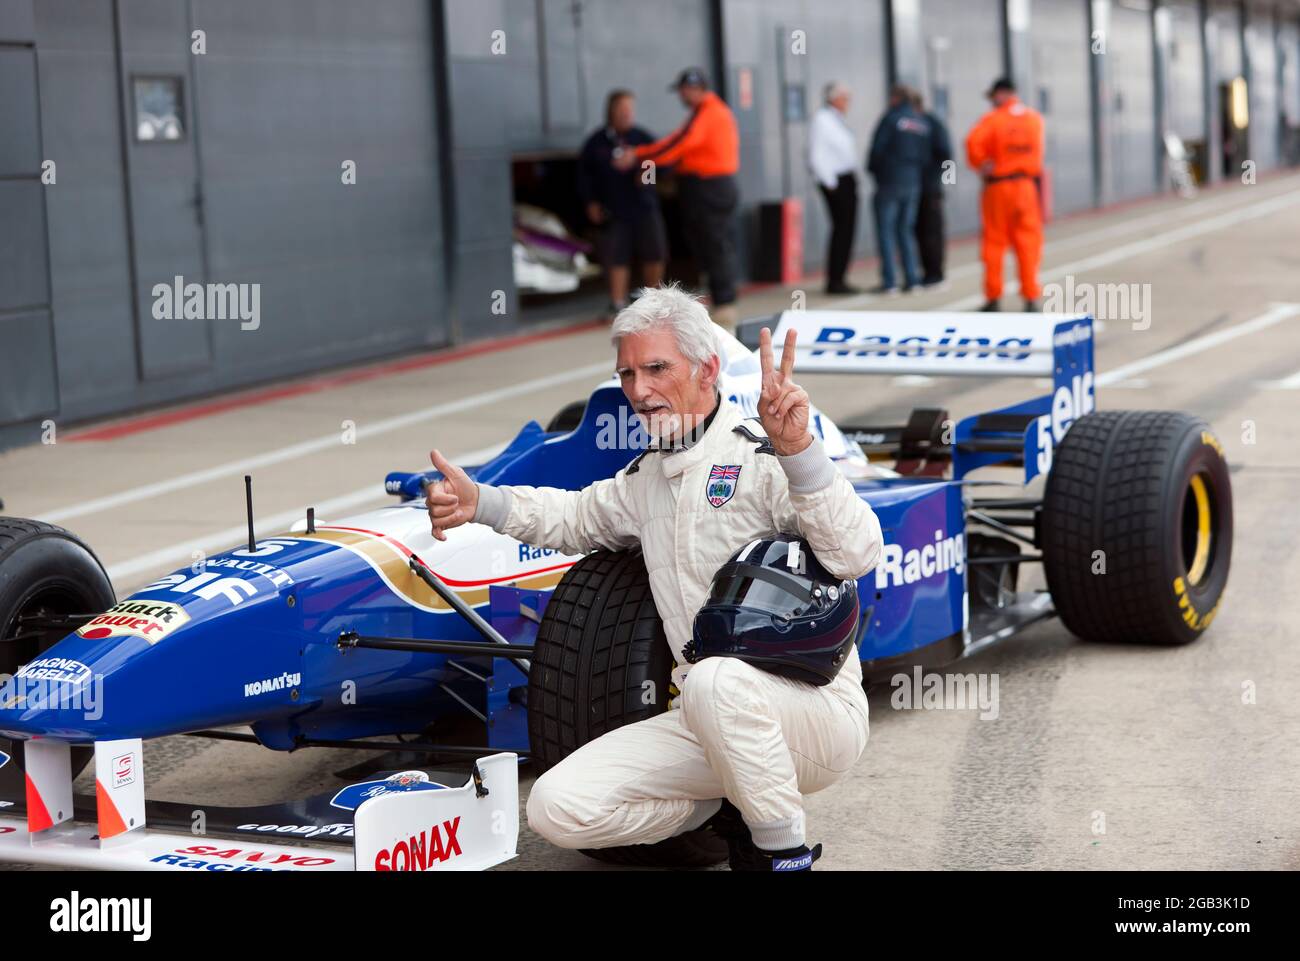 Damon Hill in posa accanto al suo Campionato del mondo vincendo la Williams FW18 Formula One Car, dopo aver eseguito diversi giri dimostrativi ad alta velocità del circuito, al Silverstone Classic 2021 Foto Stock